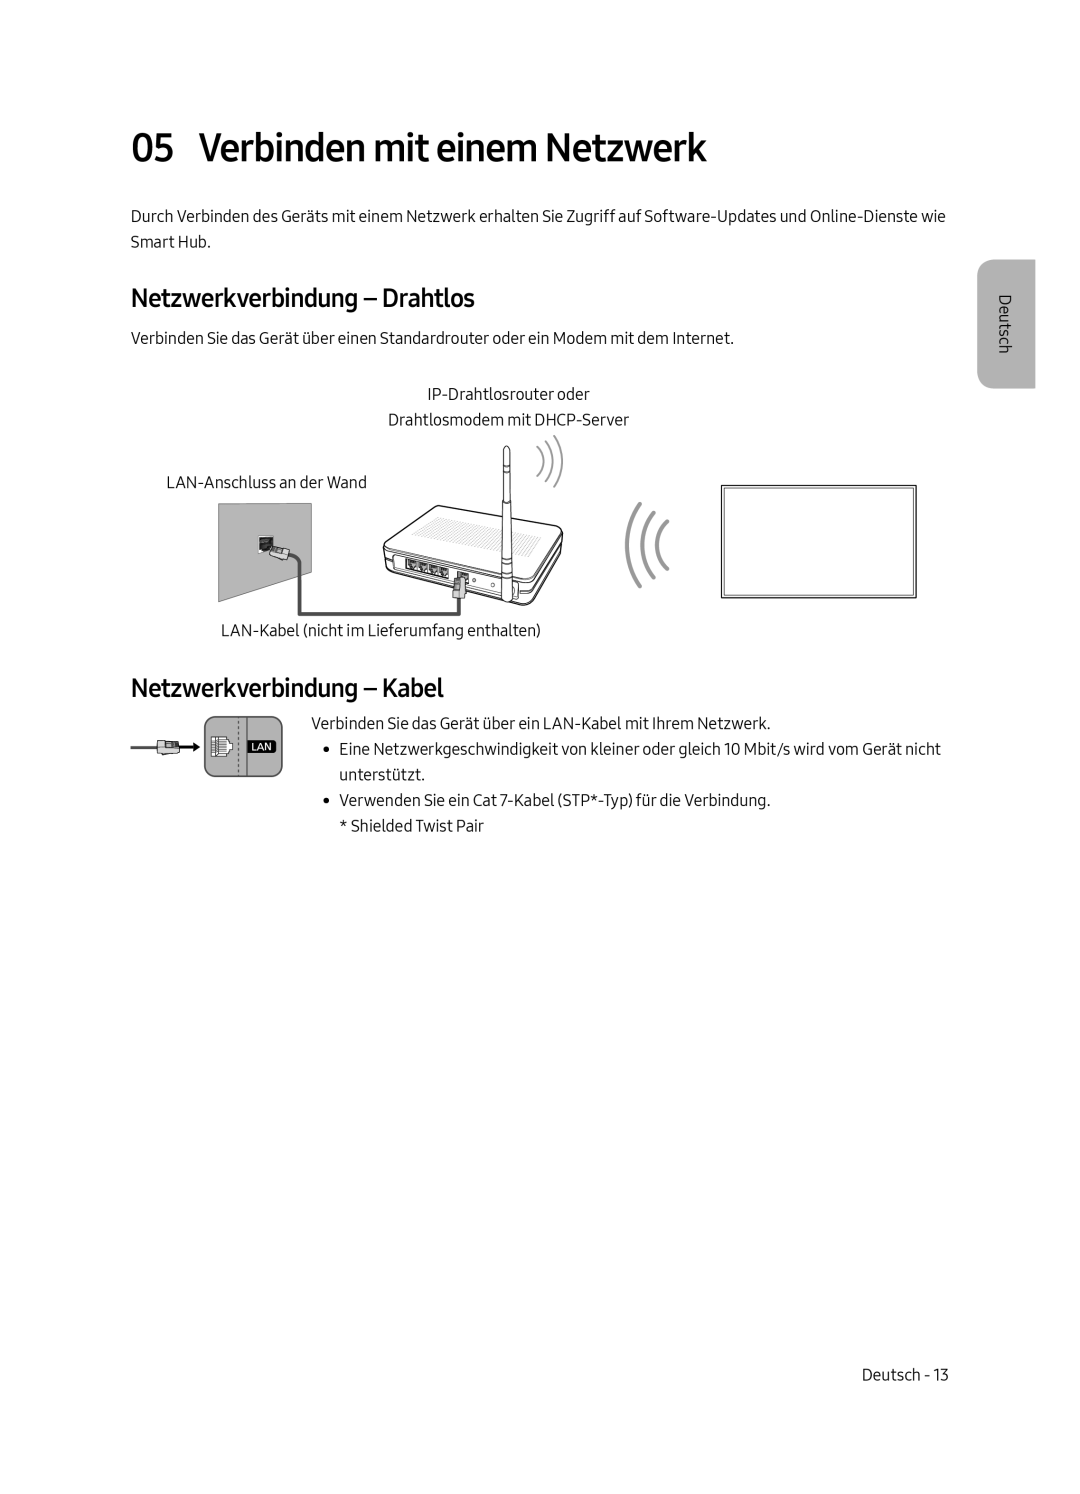 Samsung UE43MU6179UXZG manual Verbinden mit einem Netzwerk, Netzwerkverbindung - Drahtlos, Netzwerkverbindung - Kabel 